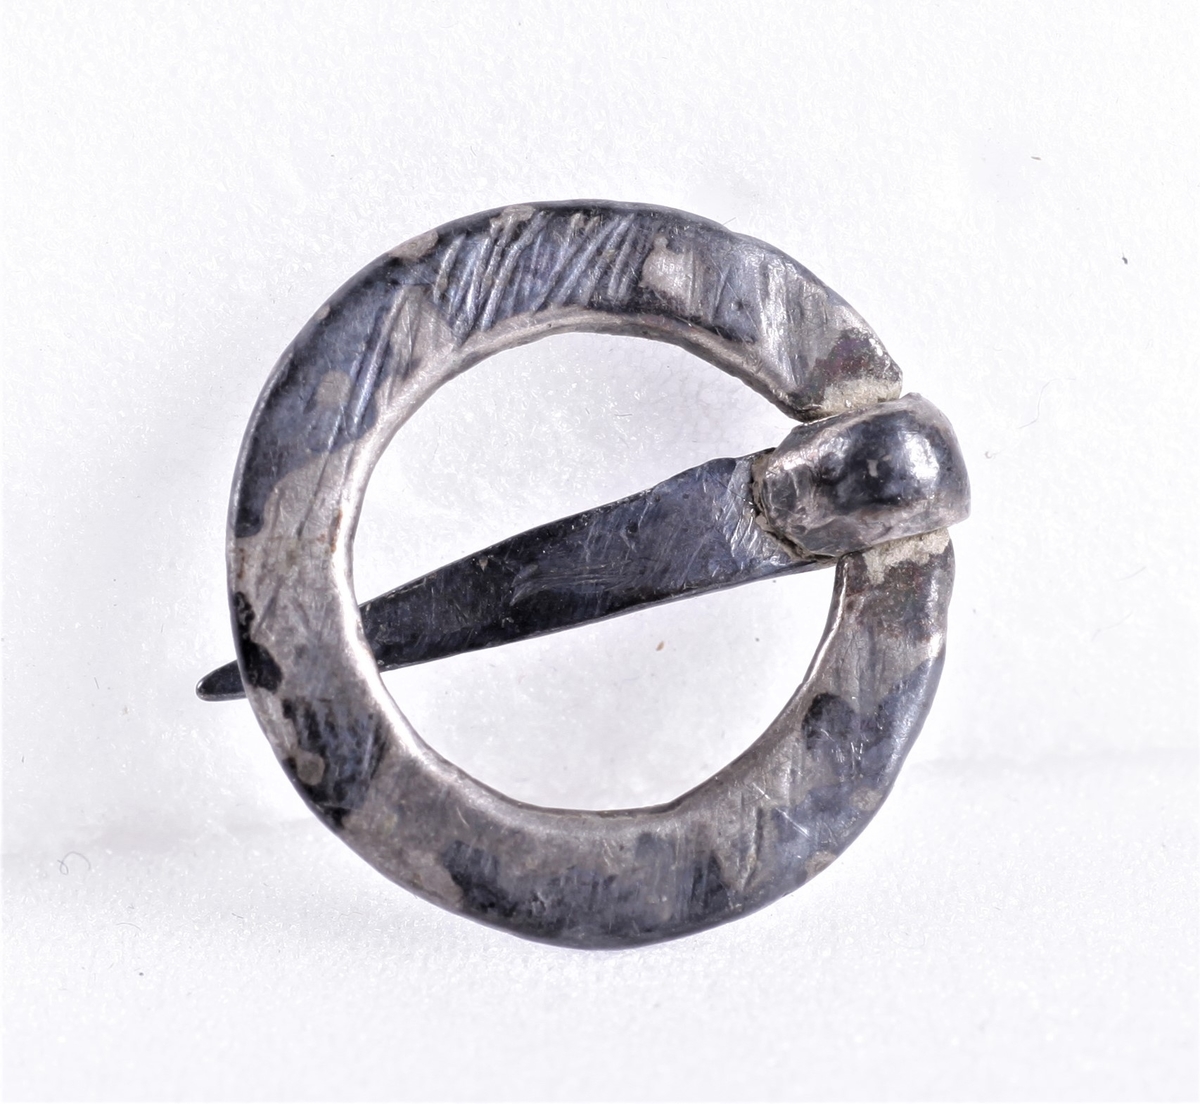 Tre små spenner eller spretter, a) hjerteformet sølv, b) hjerteformet messing, c) ringformet sølv.